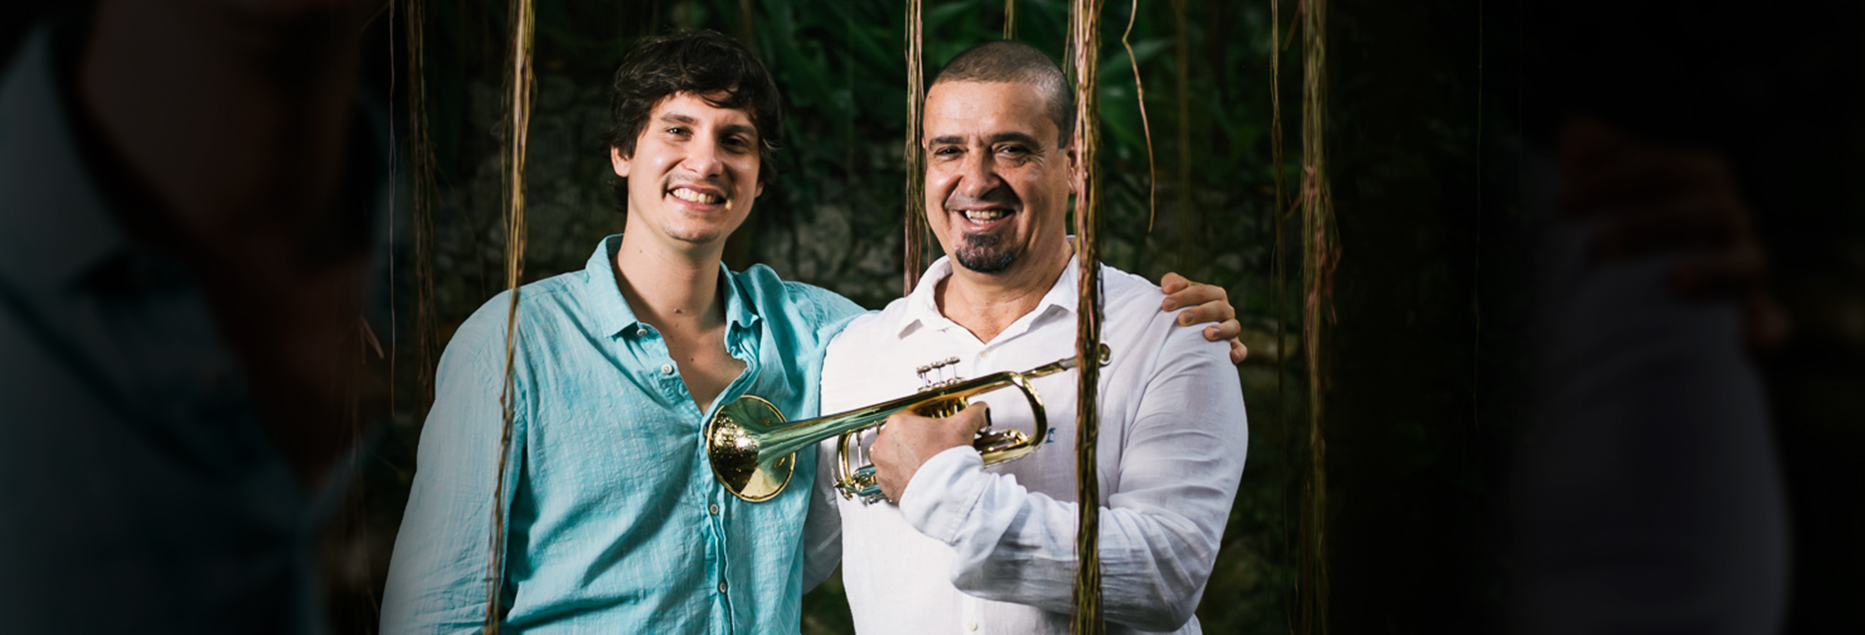 Silvério Pontes e Antonio Guerra celebram a música popular com o show “Coração Brasileiro”